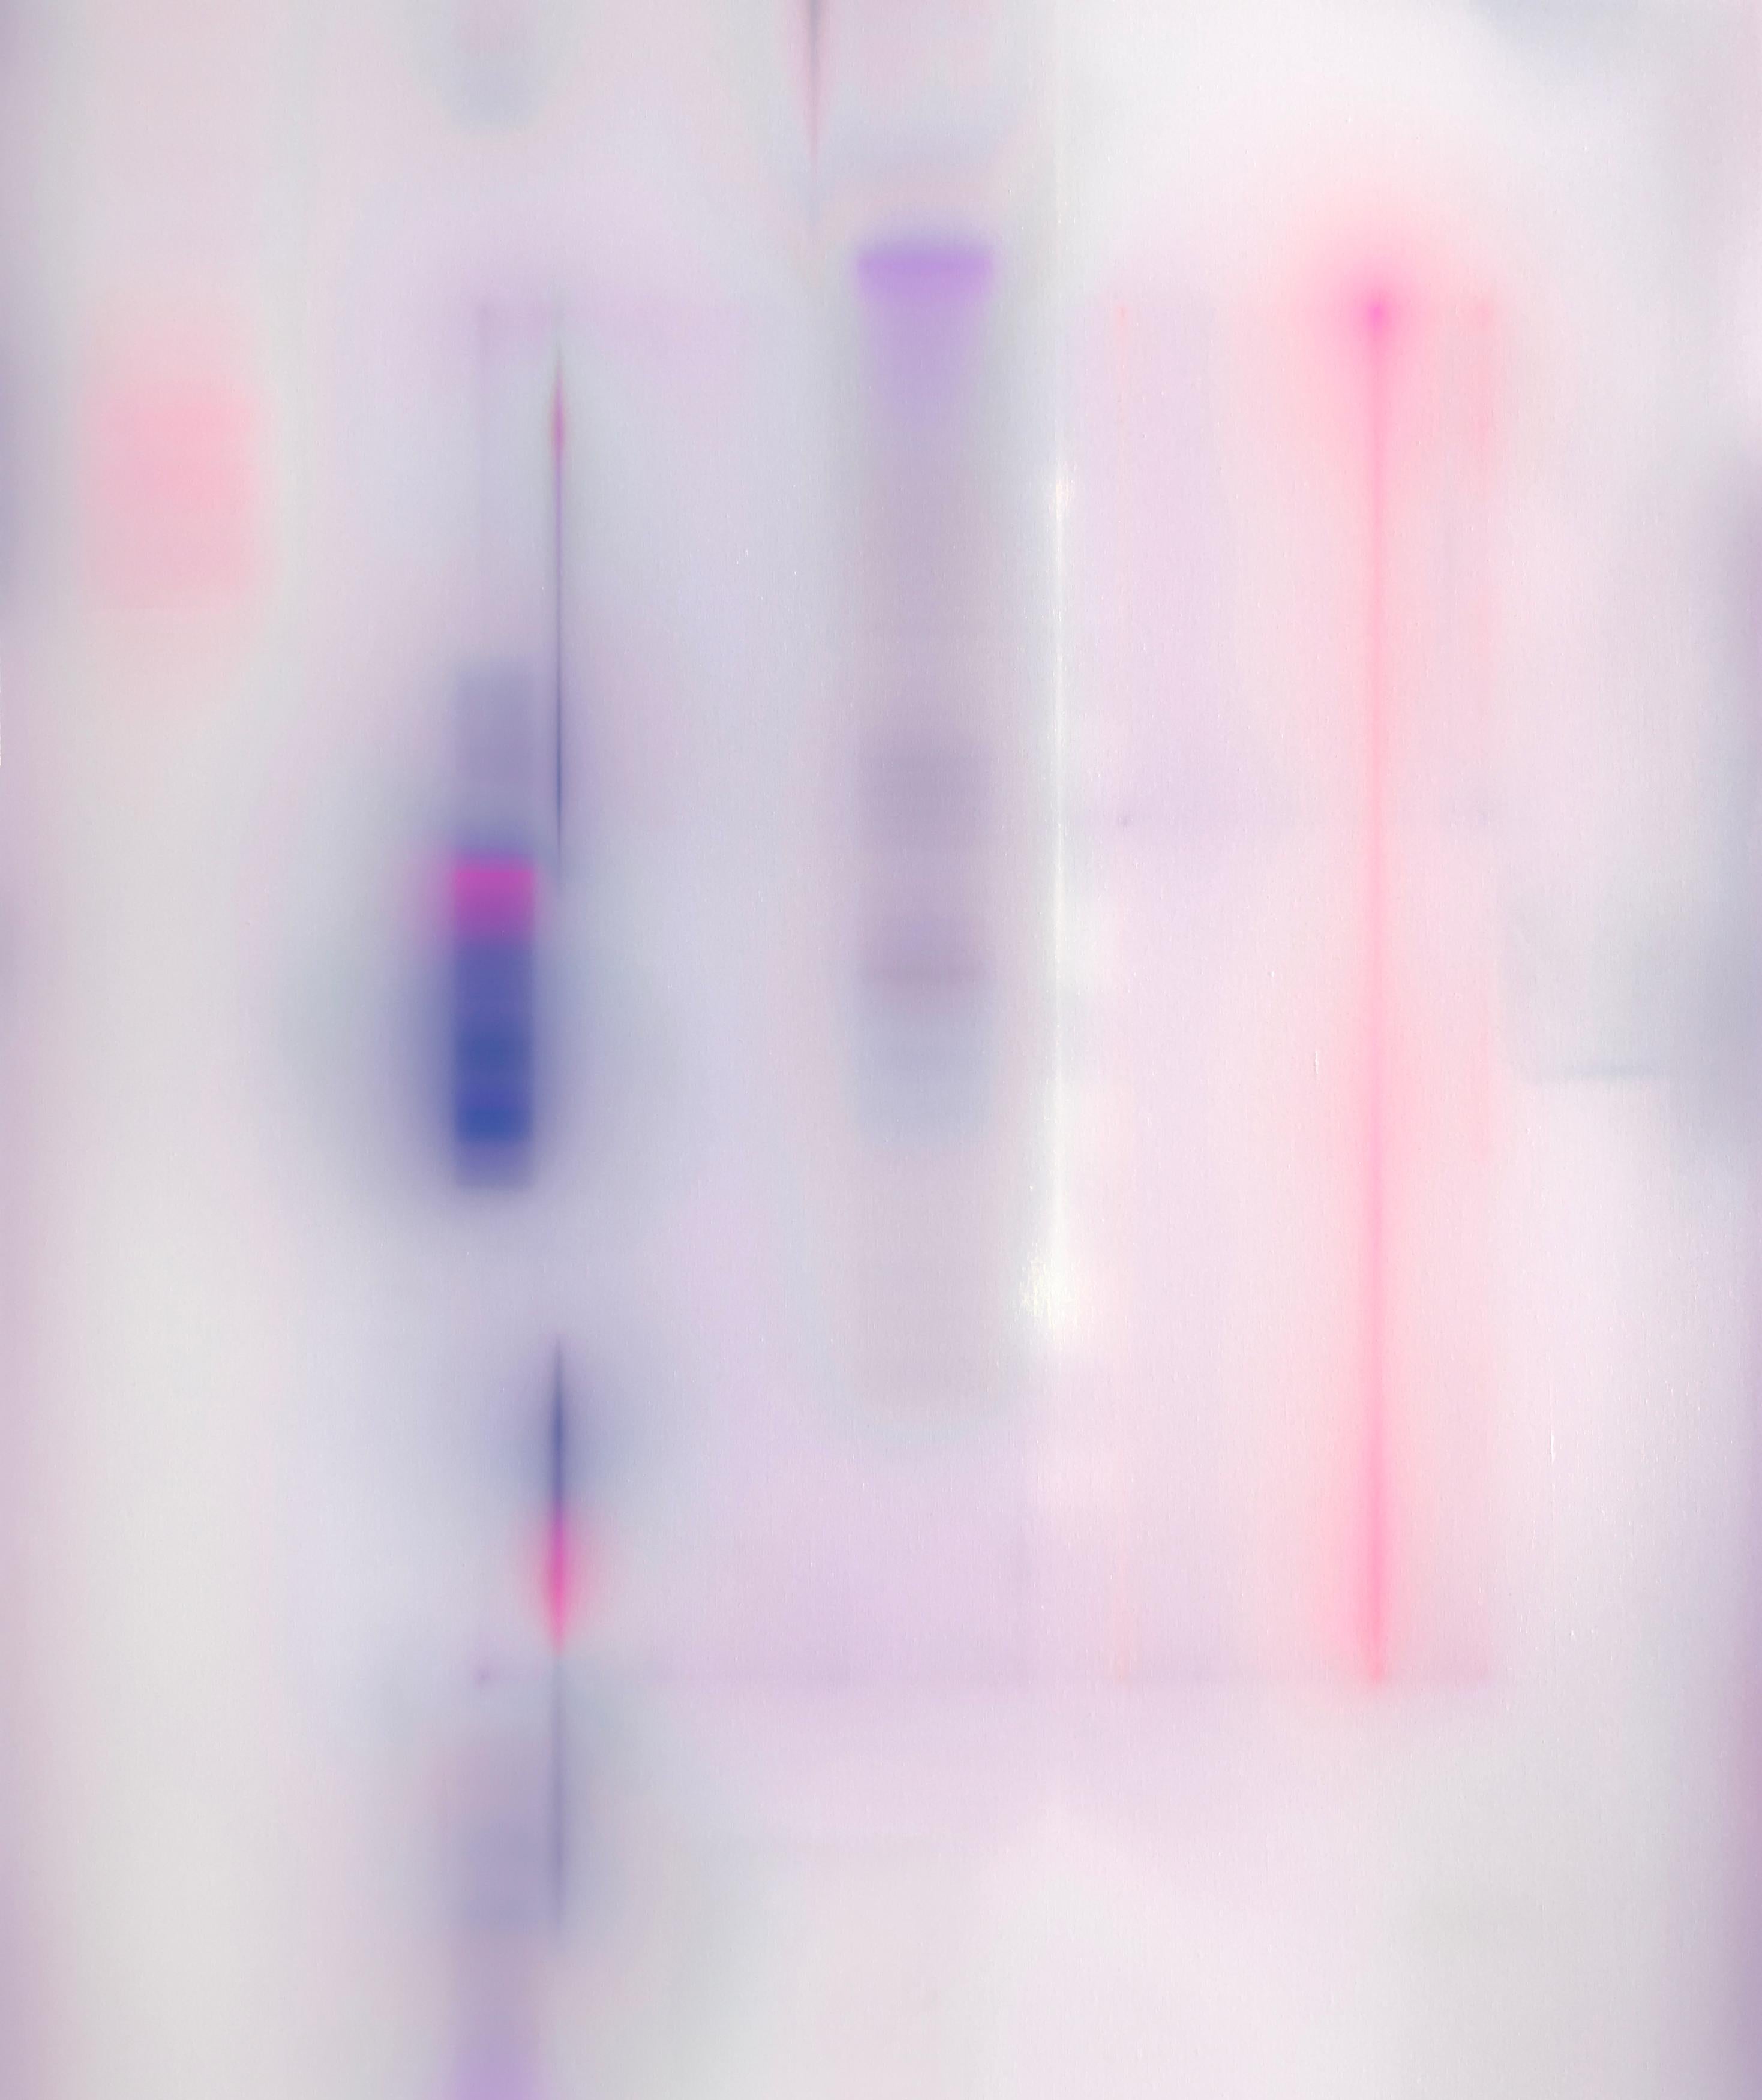 Hesper 001 und Hesper 002 Diptychon, 2023 von Francisco Larios
Aus der Serie Hesper
Acryl, Pastellkreide, Airbrush und Autolack auf Leinwand
Gesamtgröße: 100 cm H x 170 cm B
Individuelle Größe: 100 cm H x 85 cm